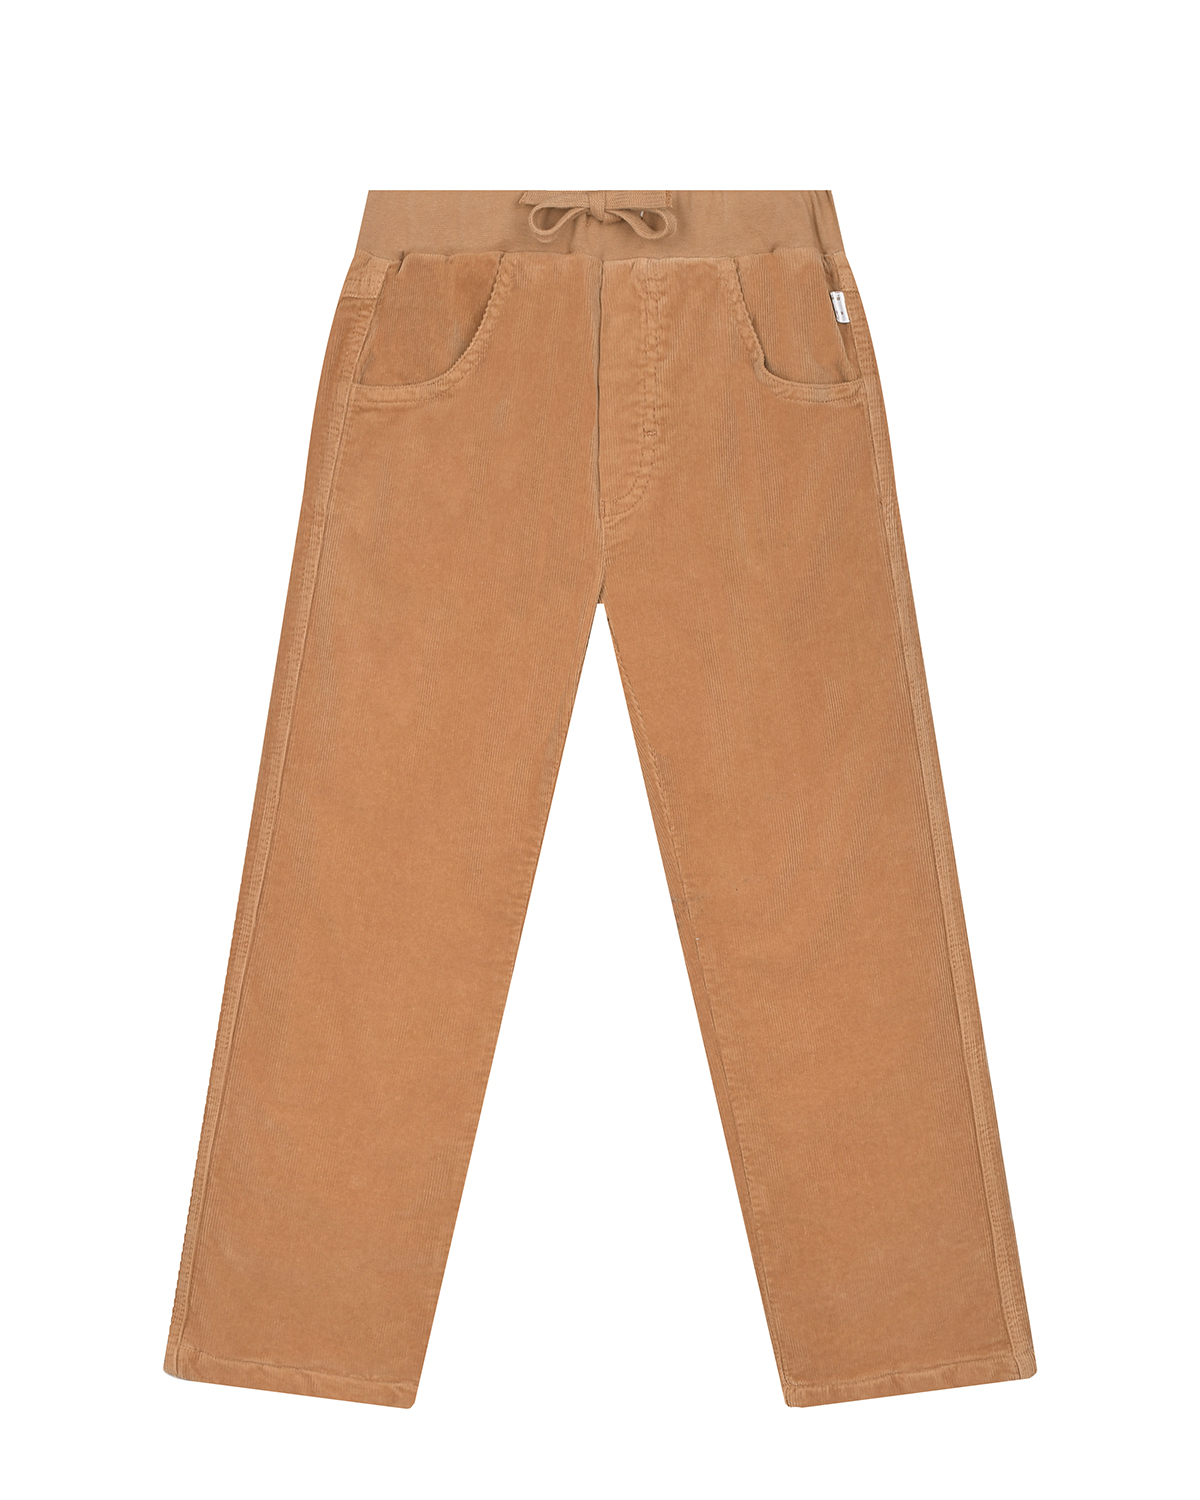 Велюровые брюки песочного цвета IL Gufo детские, размер 98